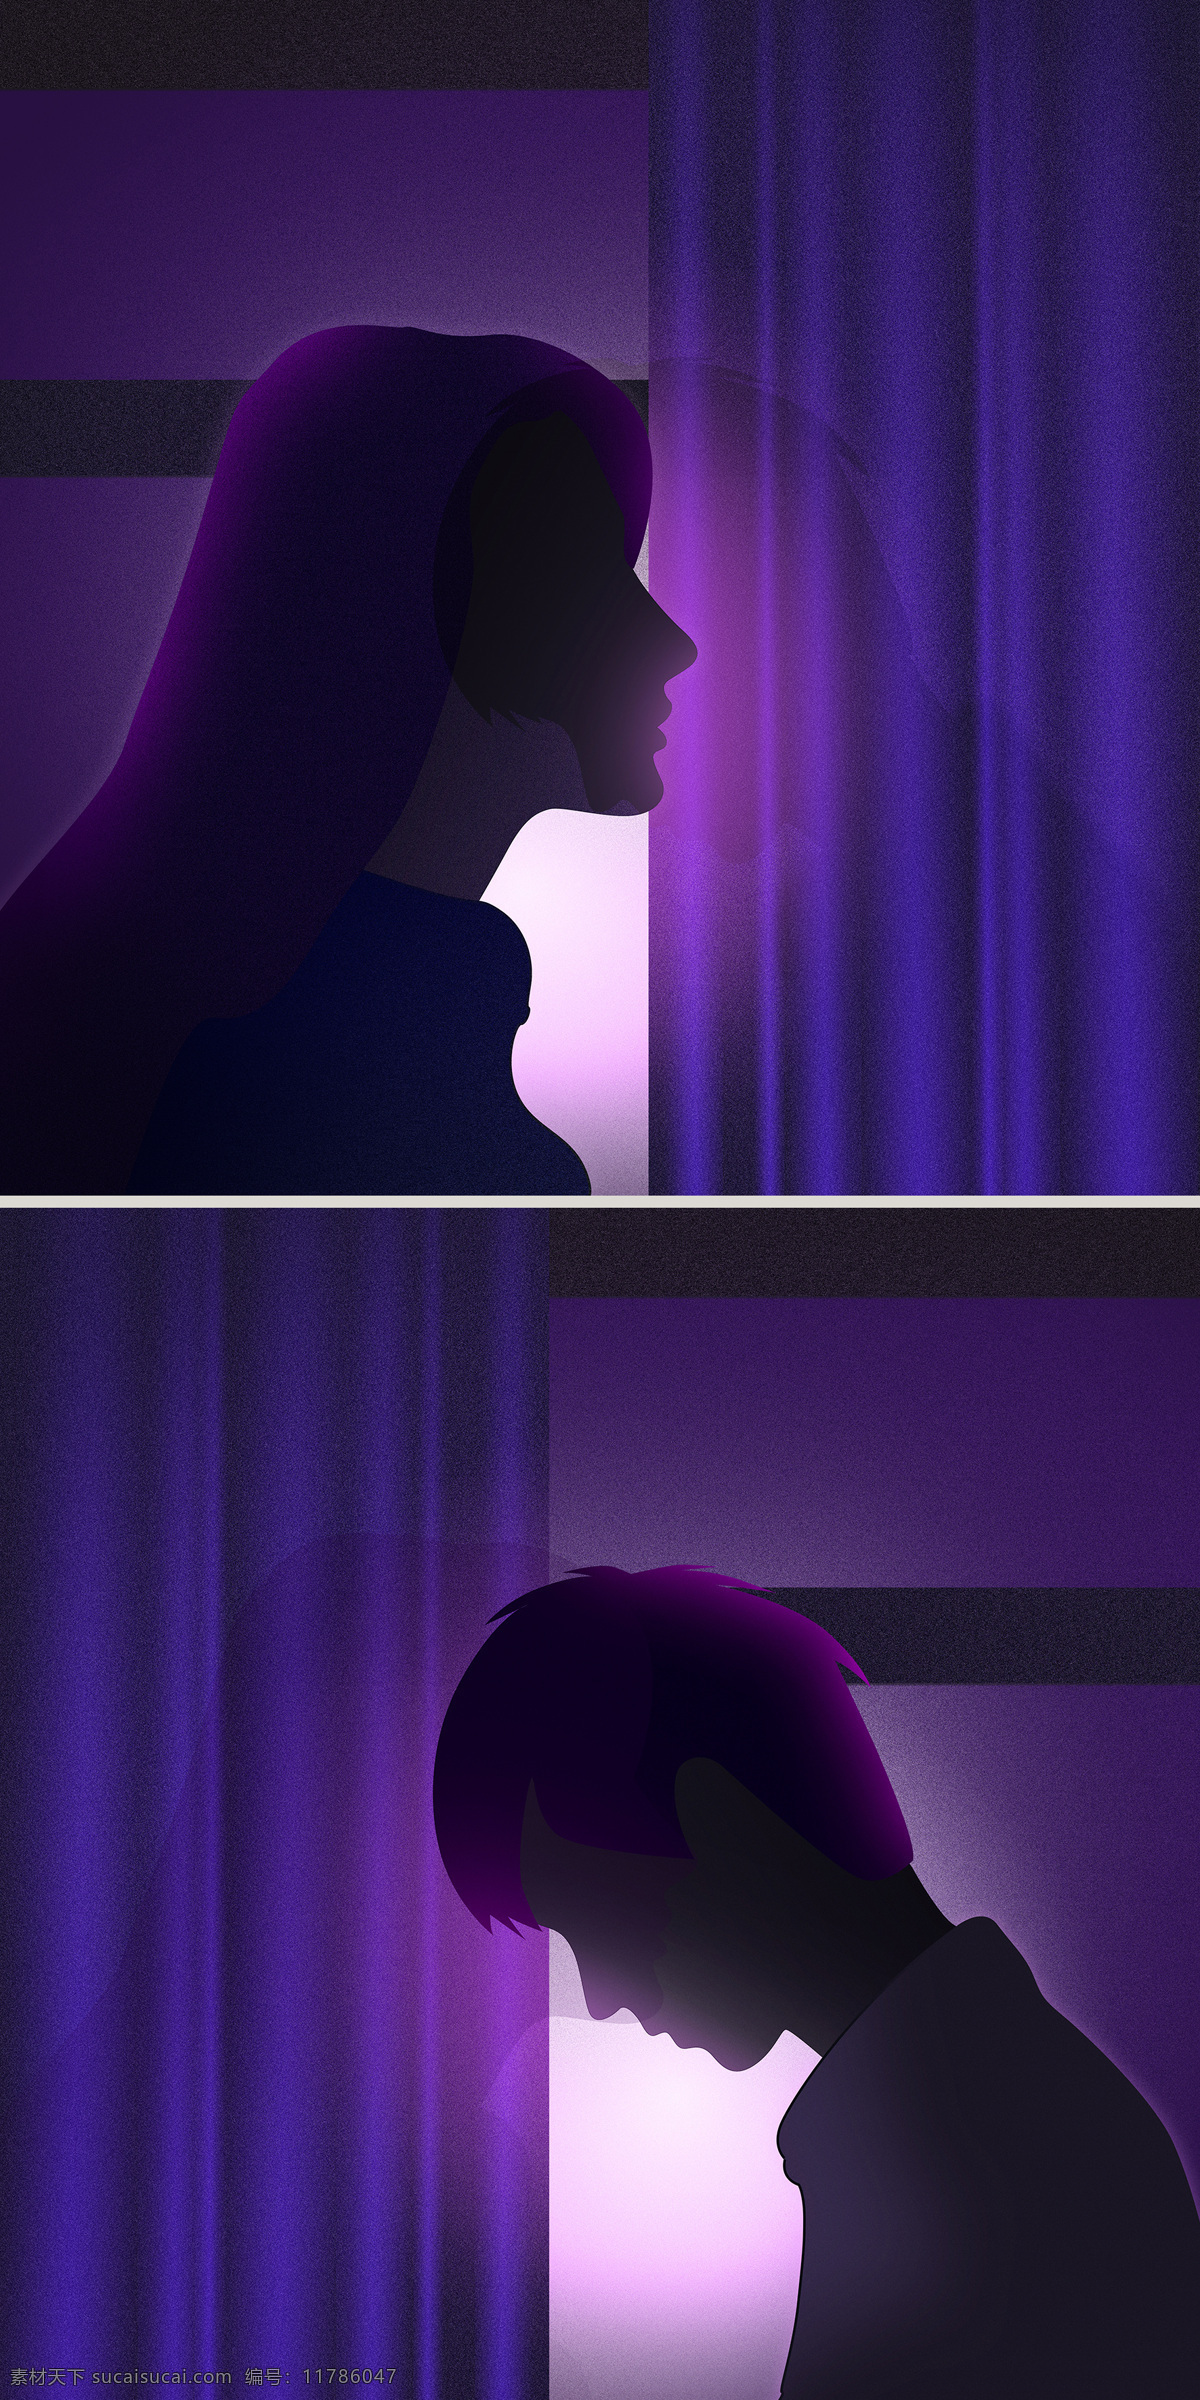 原创 手绘 紫色 系 逆光 磨砂 质感 情侣 头像 唯美 人物 插画 卡通 颗粒 情侣头像 手机用图 紫色系